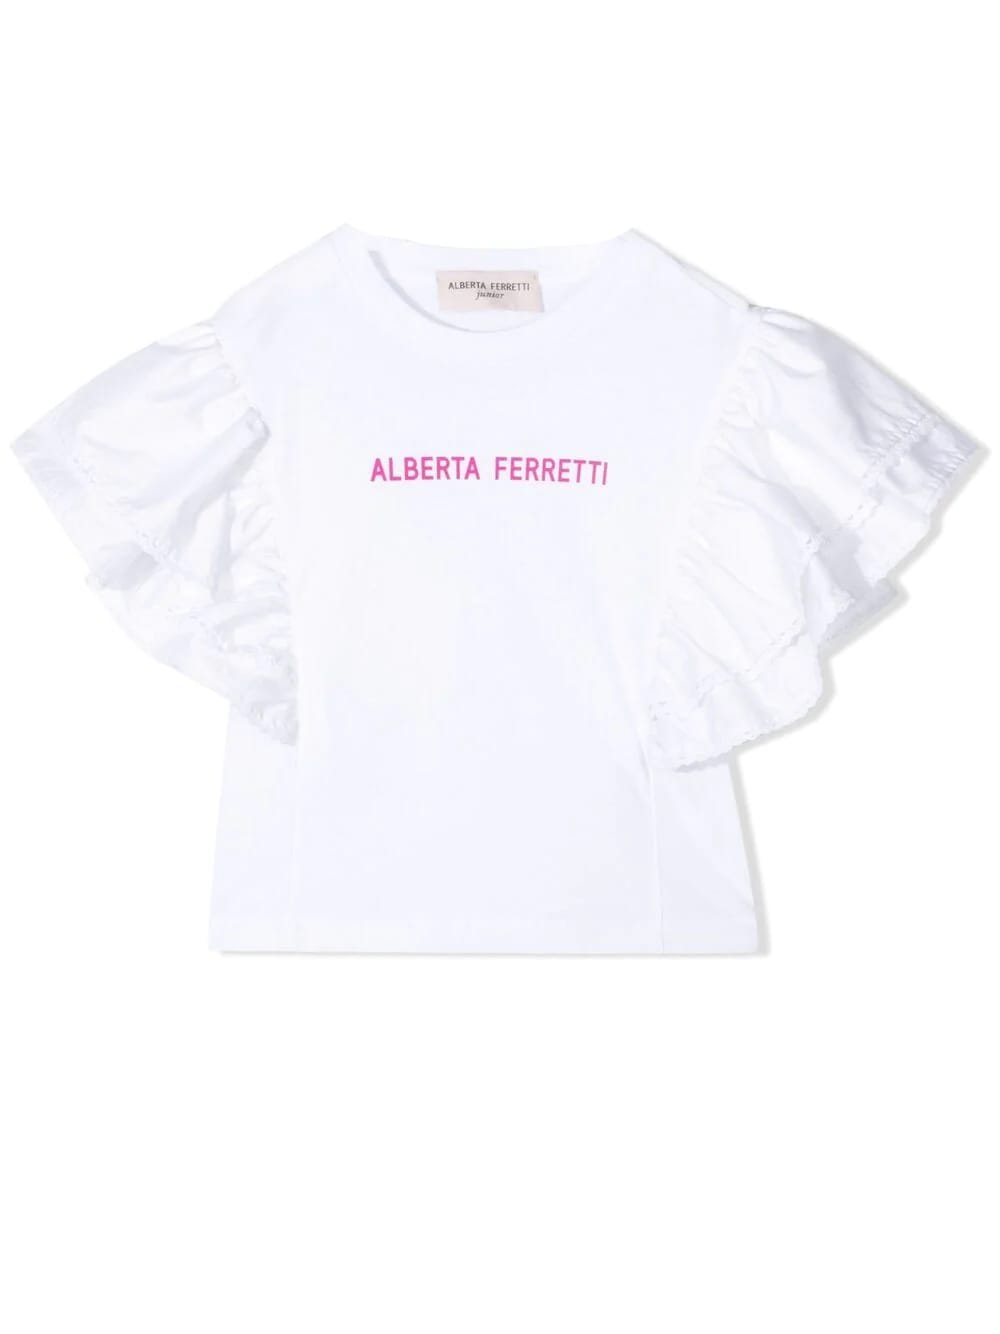 Alberta Ferretti Print T-shirt